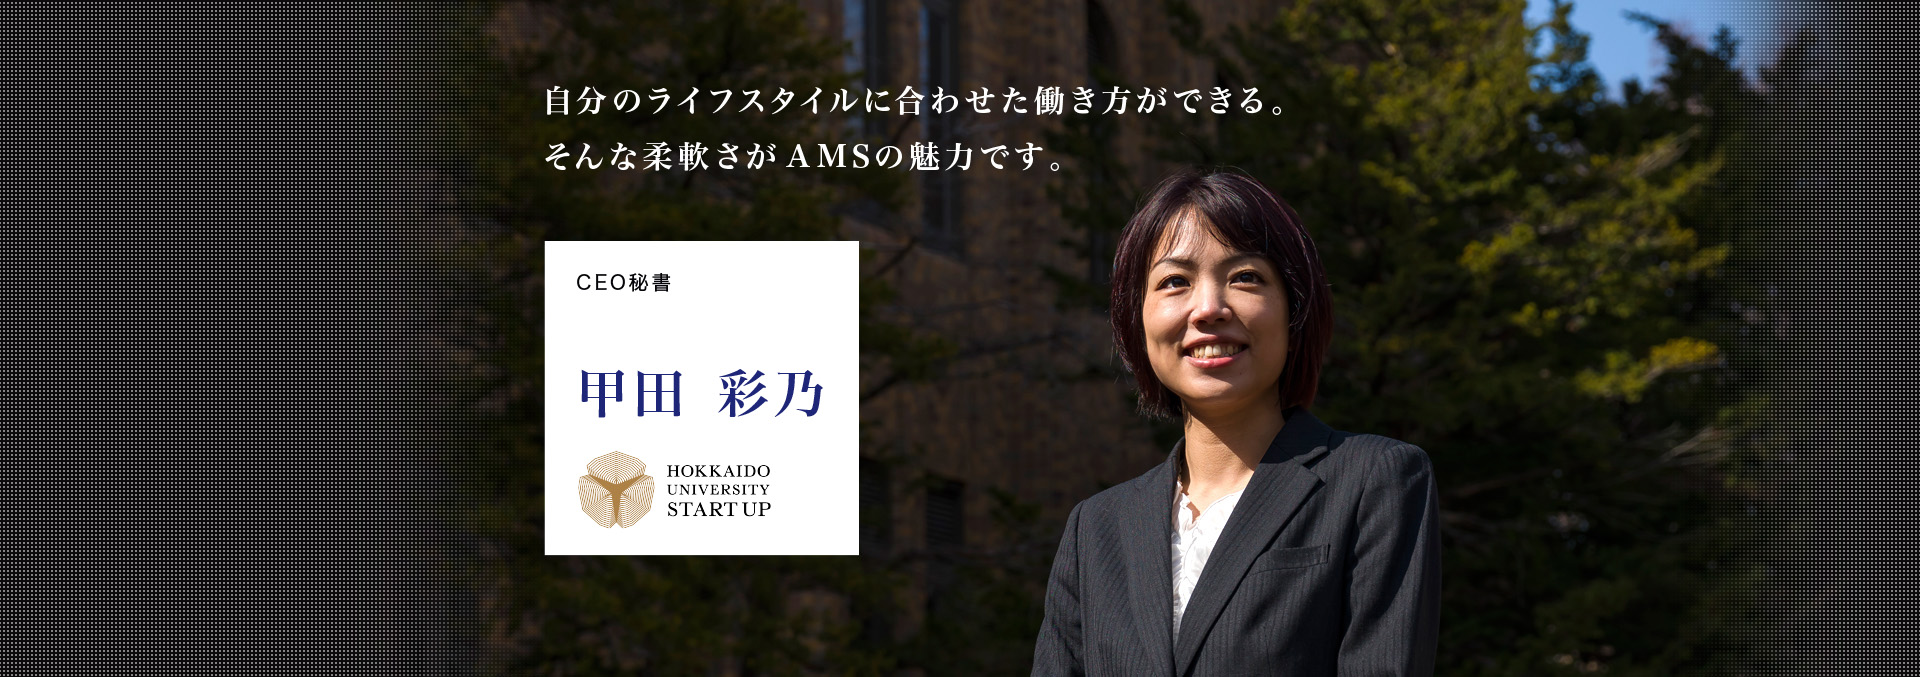 CEO秘書 甲田彩乃 自分のライフスタイルに合わせた働き方ができる。そんな柔軟さがAMSの魅力です。